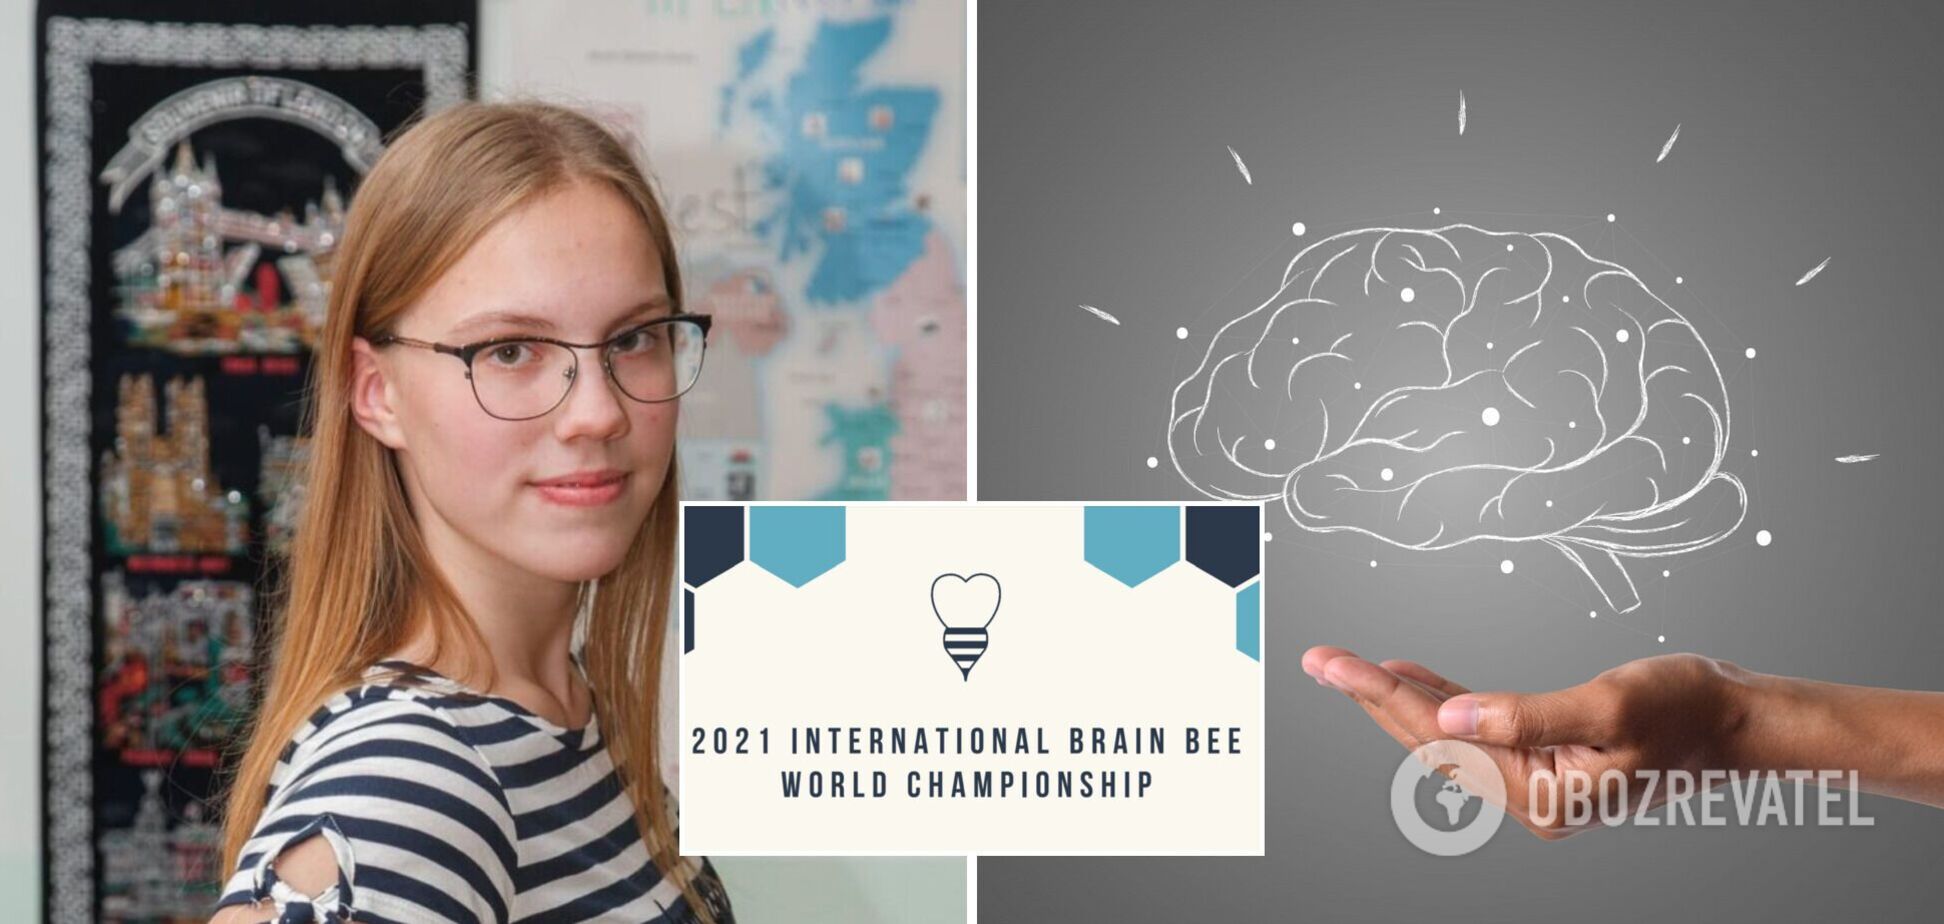 Київська 11-класниця перемогла на International Brain Bee 2021